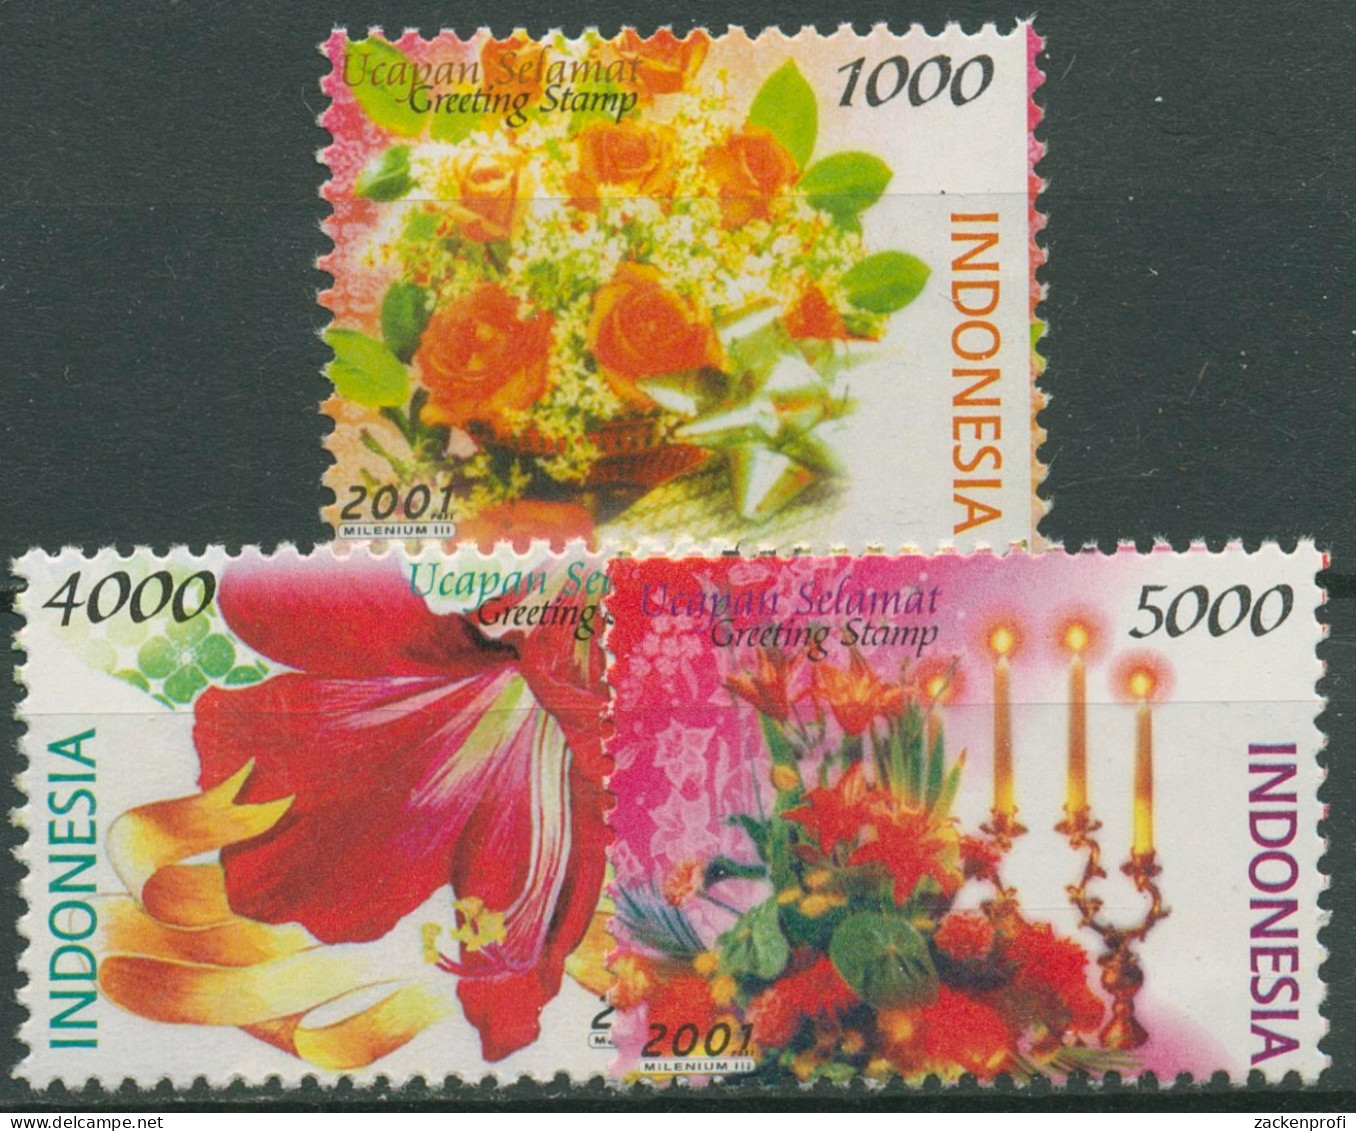 Indonesien 2001 Grußmarken Blumen Rosen Amaryllis 2103+2106/07 Postfrisch - Indonésie